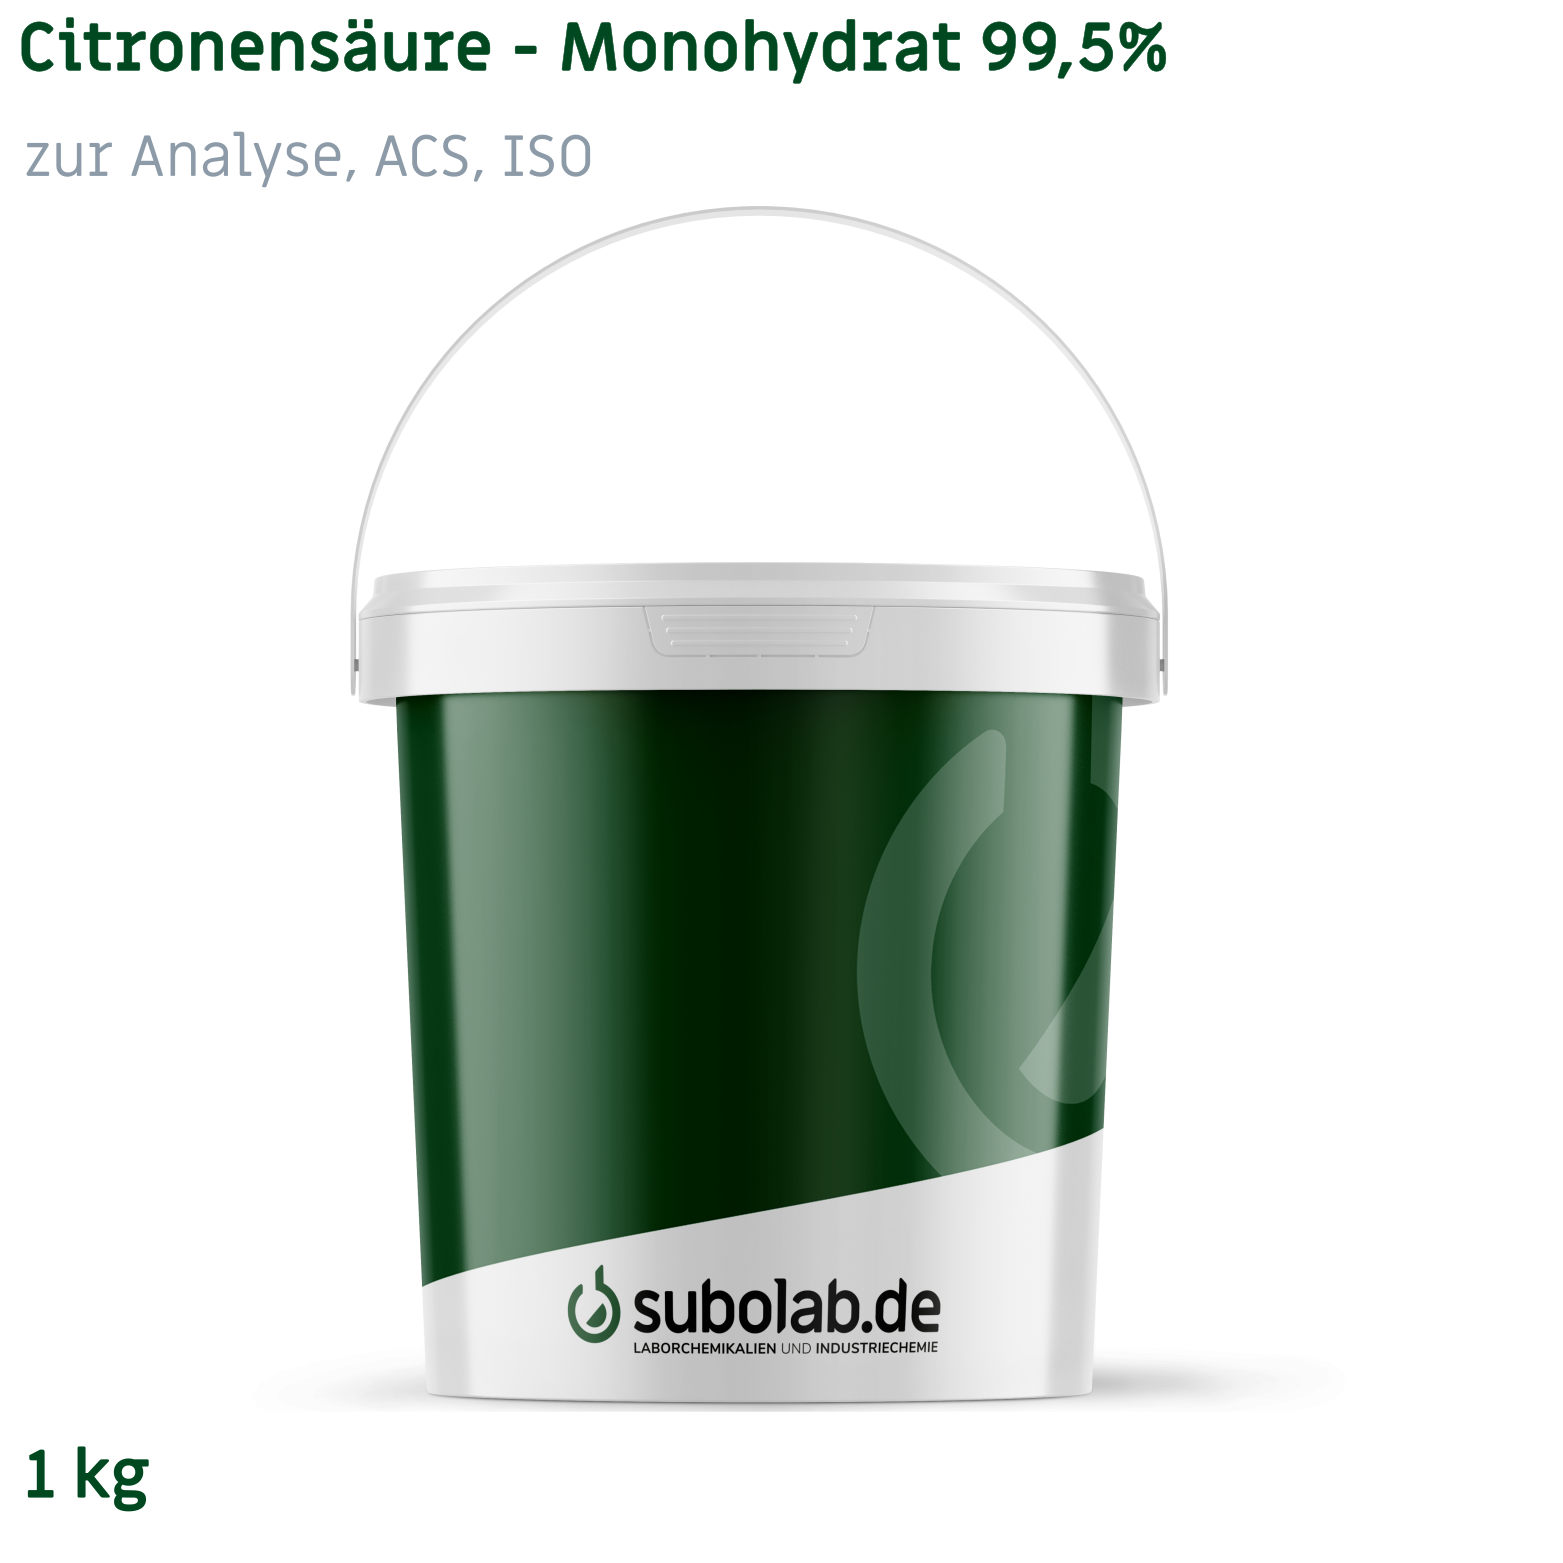 Bild von Citronensäure - Monohydrat 99,5% zur Analyse, ACS, ISO (1 kg)